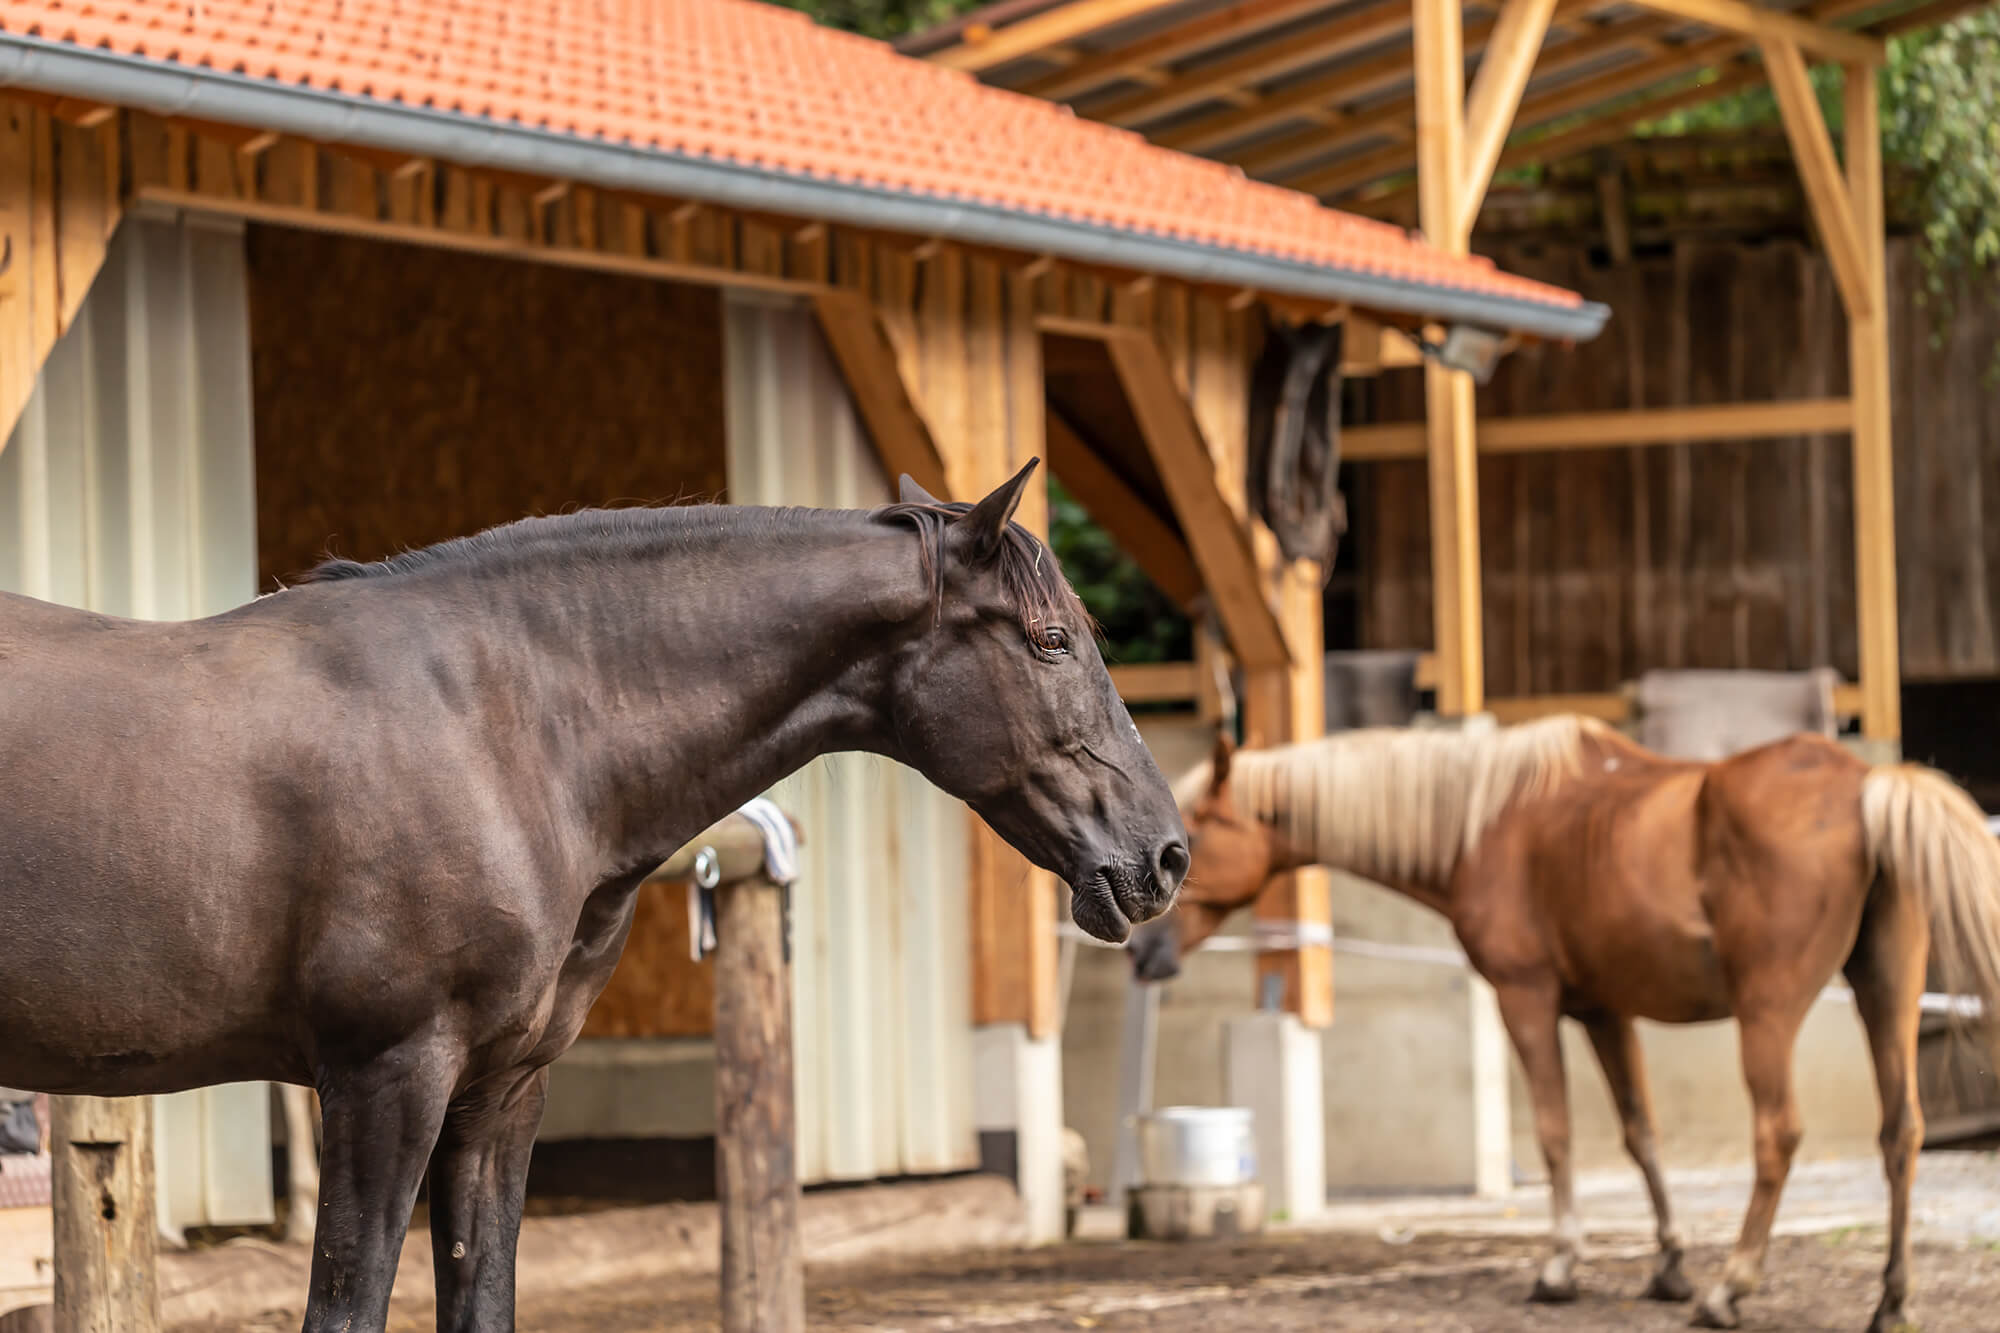 Pferd im nachhaltigen Offenstall mit naturnaher Haltung und Bewegungsfreiheit